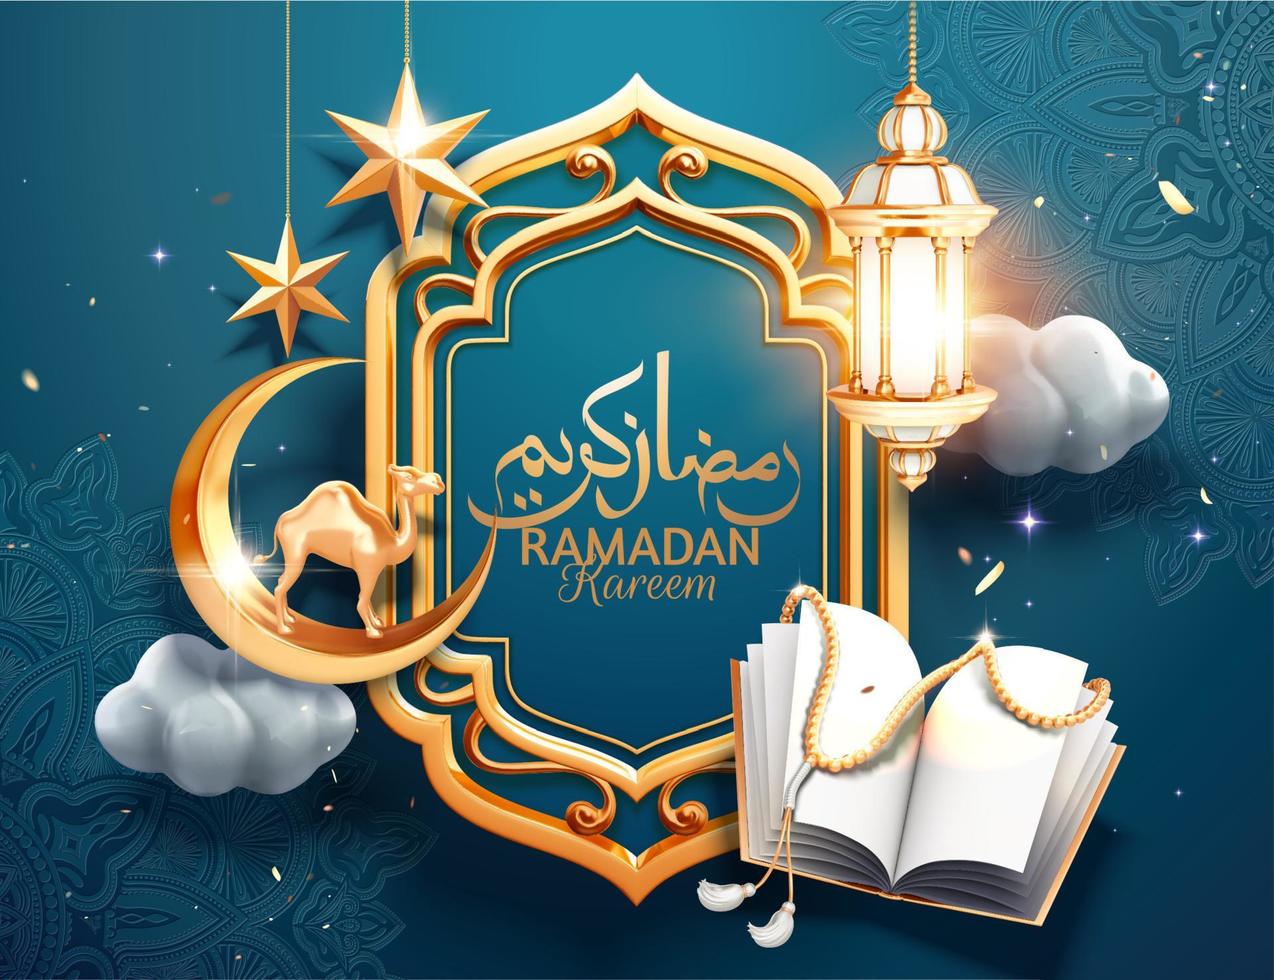 3d groet arabesk blauw achtergrond met hangende lantaarns, heilig boek koran en halve maan, Arabisch schoonschrift tekst Ramadan kareem voor heilig maand vector